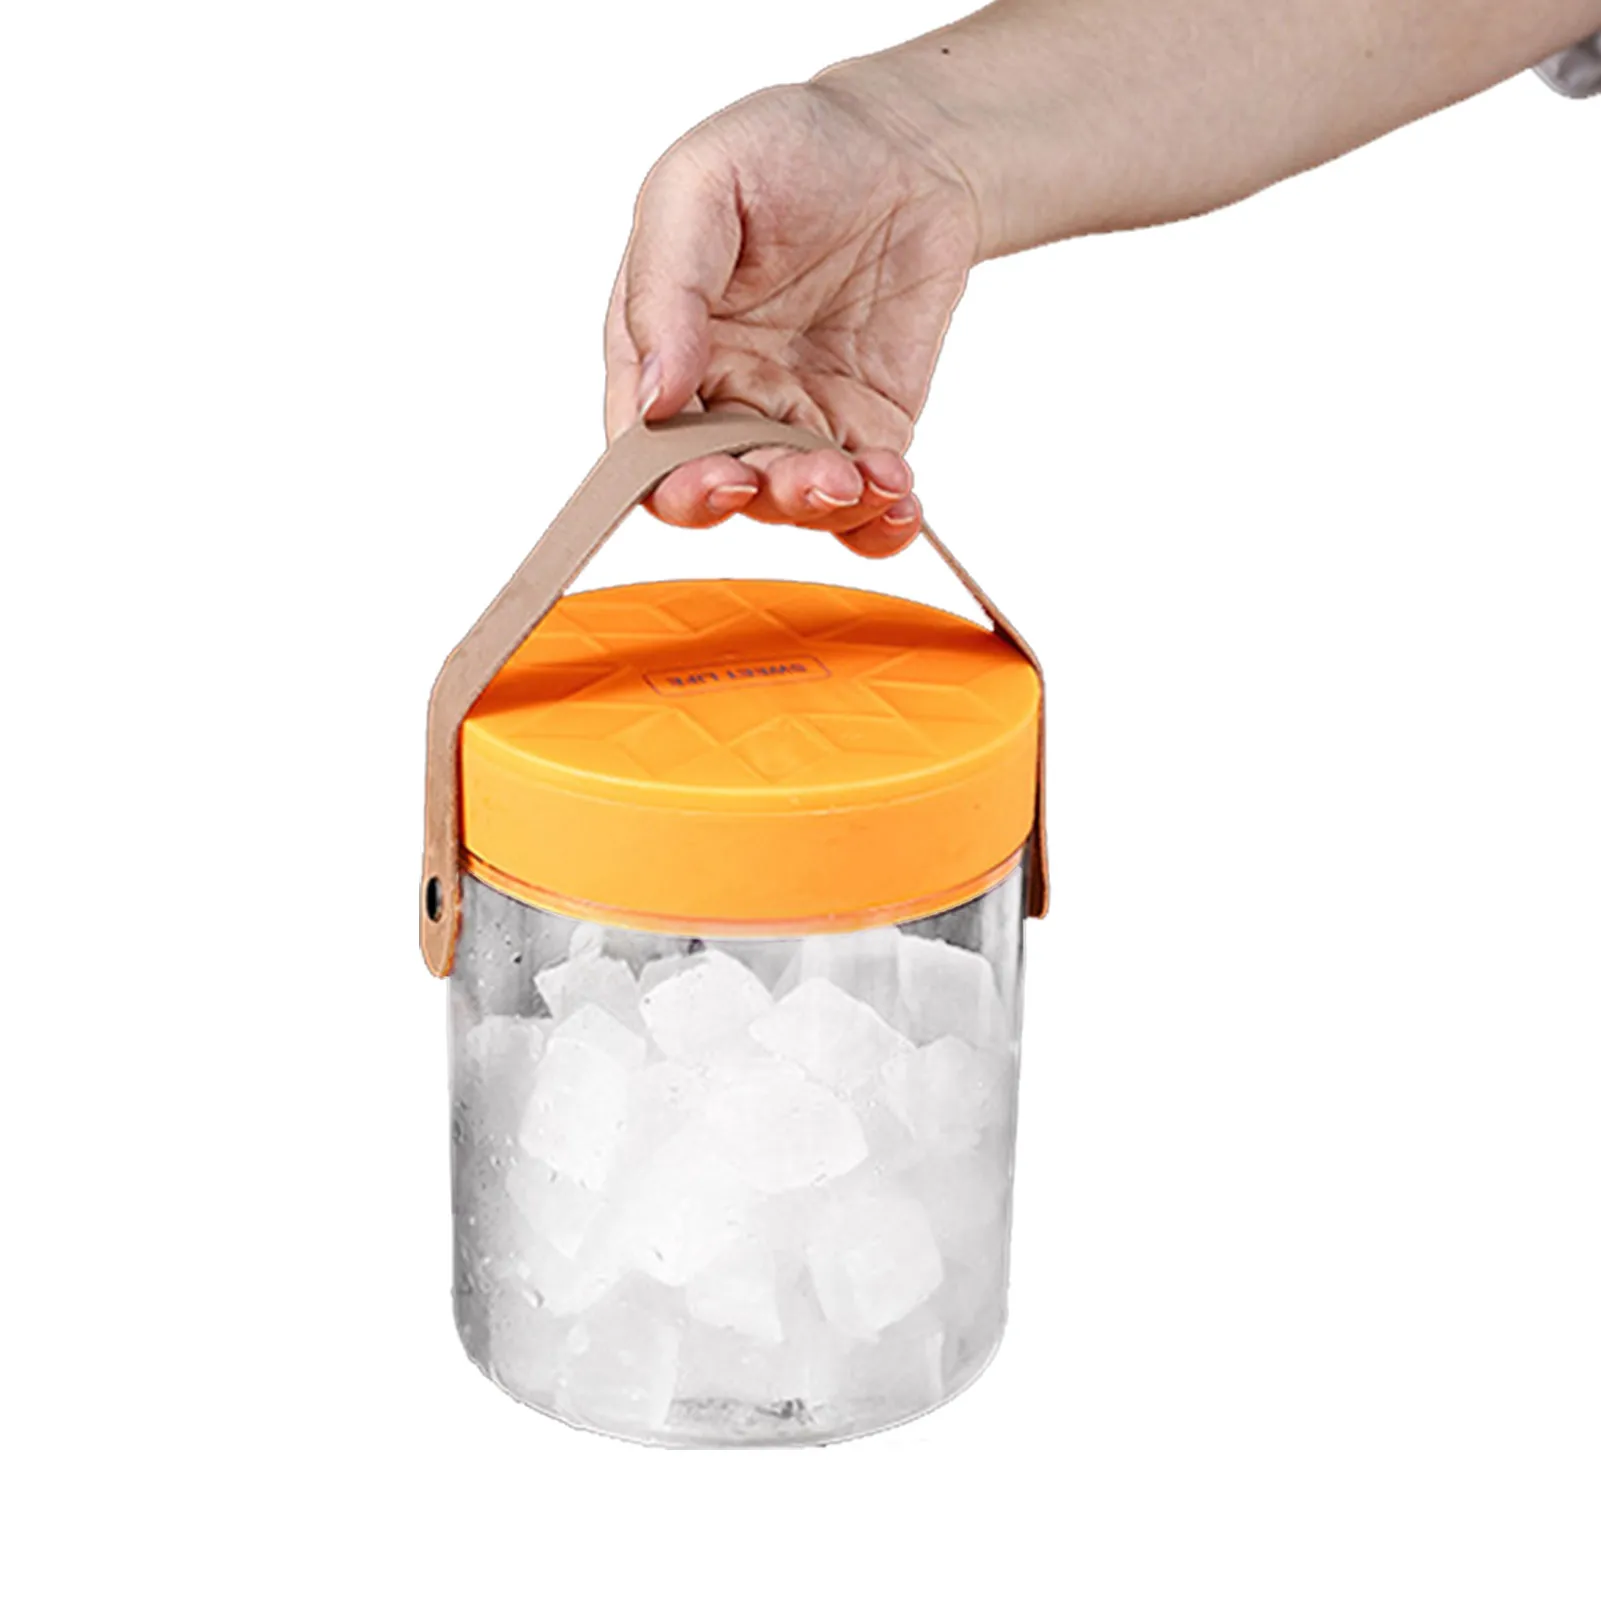 

Прозрачное ведерко для льда Силиконовый поднос для льда со снежинками, ведро, крышка, щипцы, поднос для льда с ручкой для оптимального охлаж...